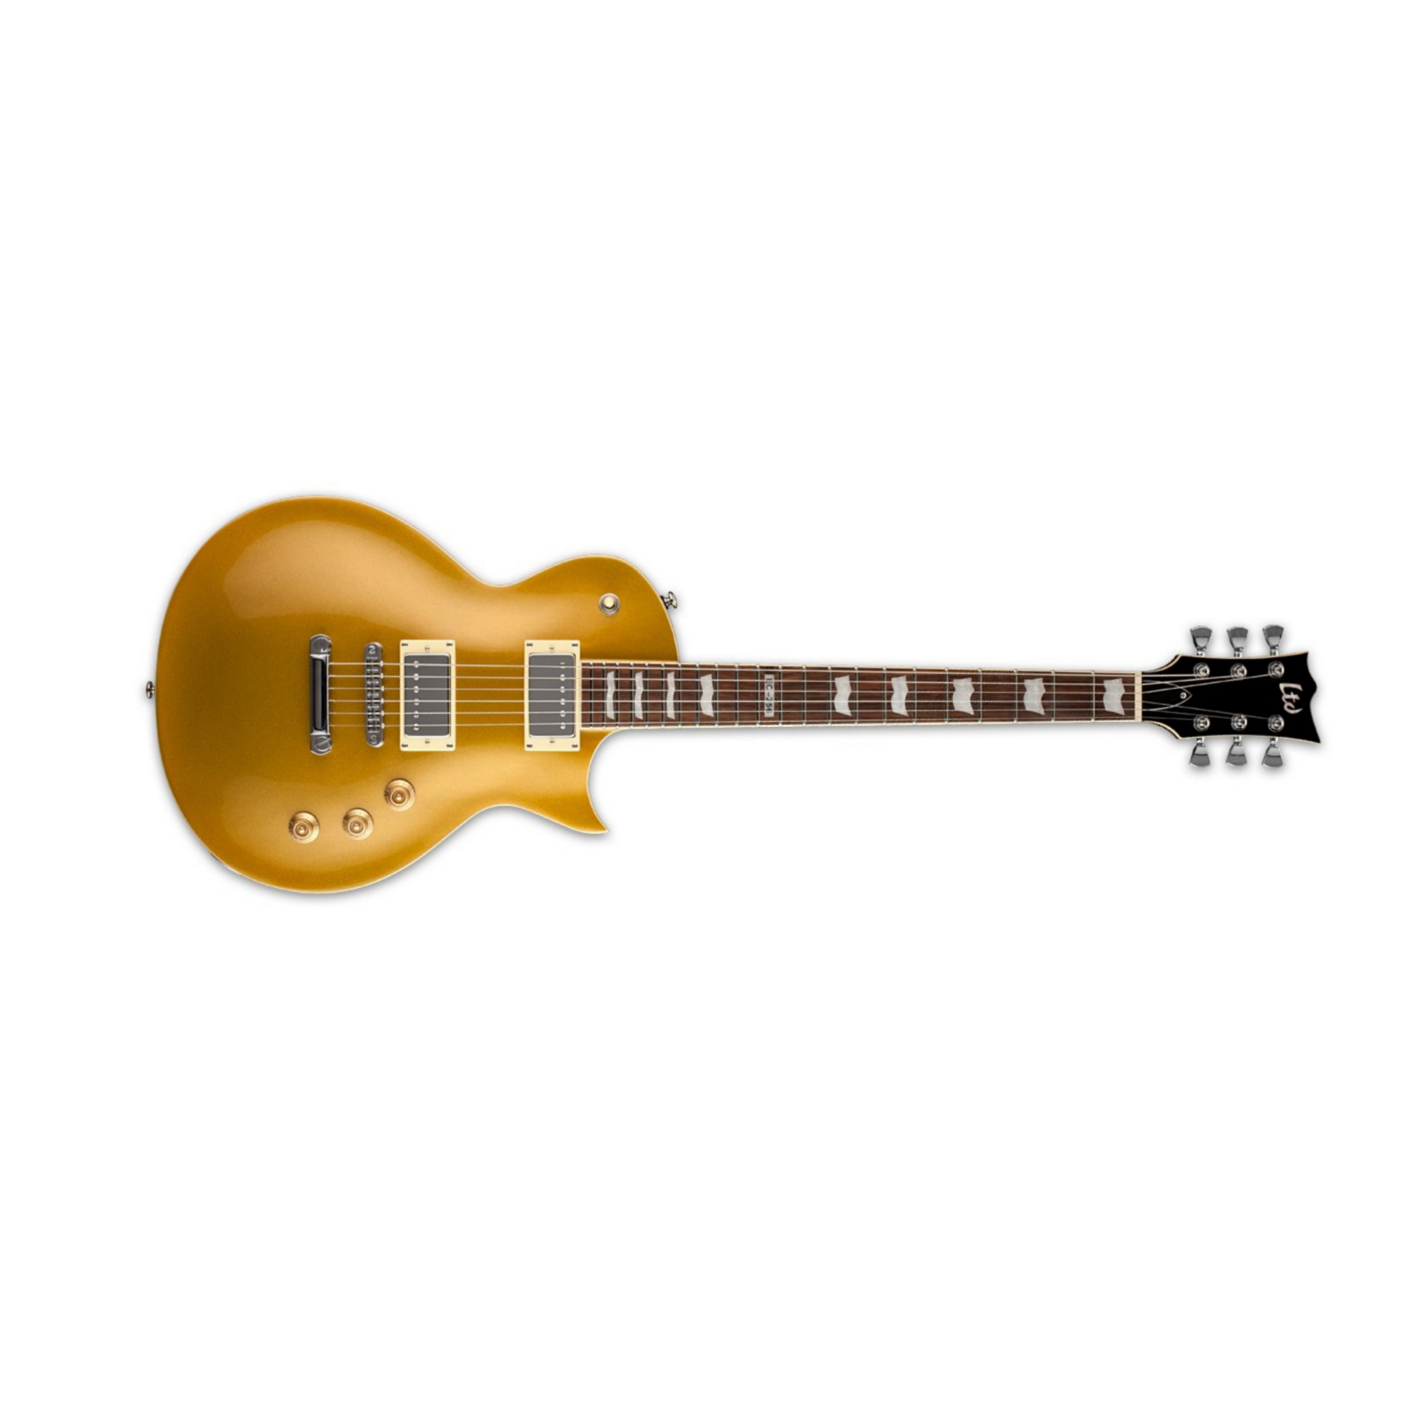 Ltd Ec 256-mgo - Enkel gesneden elektrische gitaar - Main picture